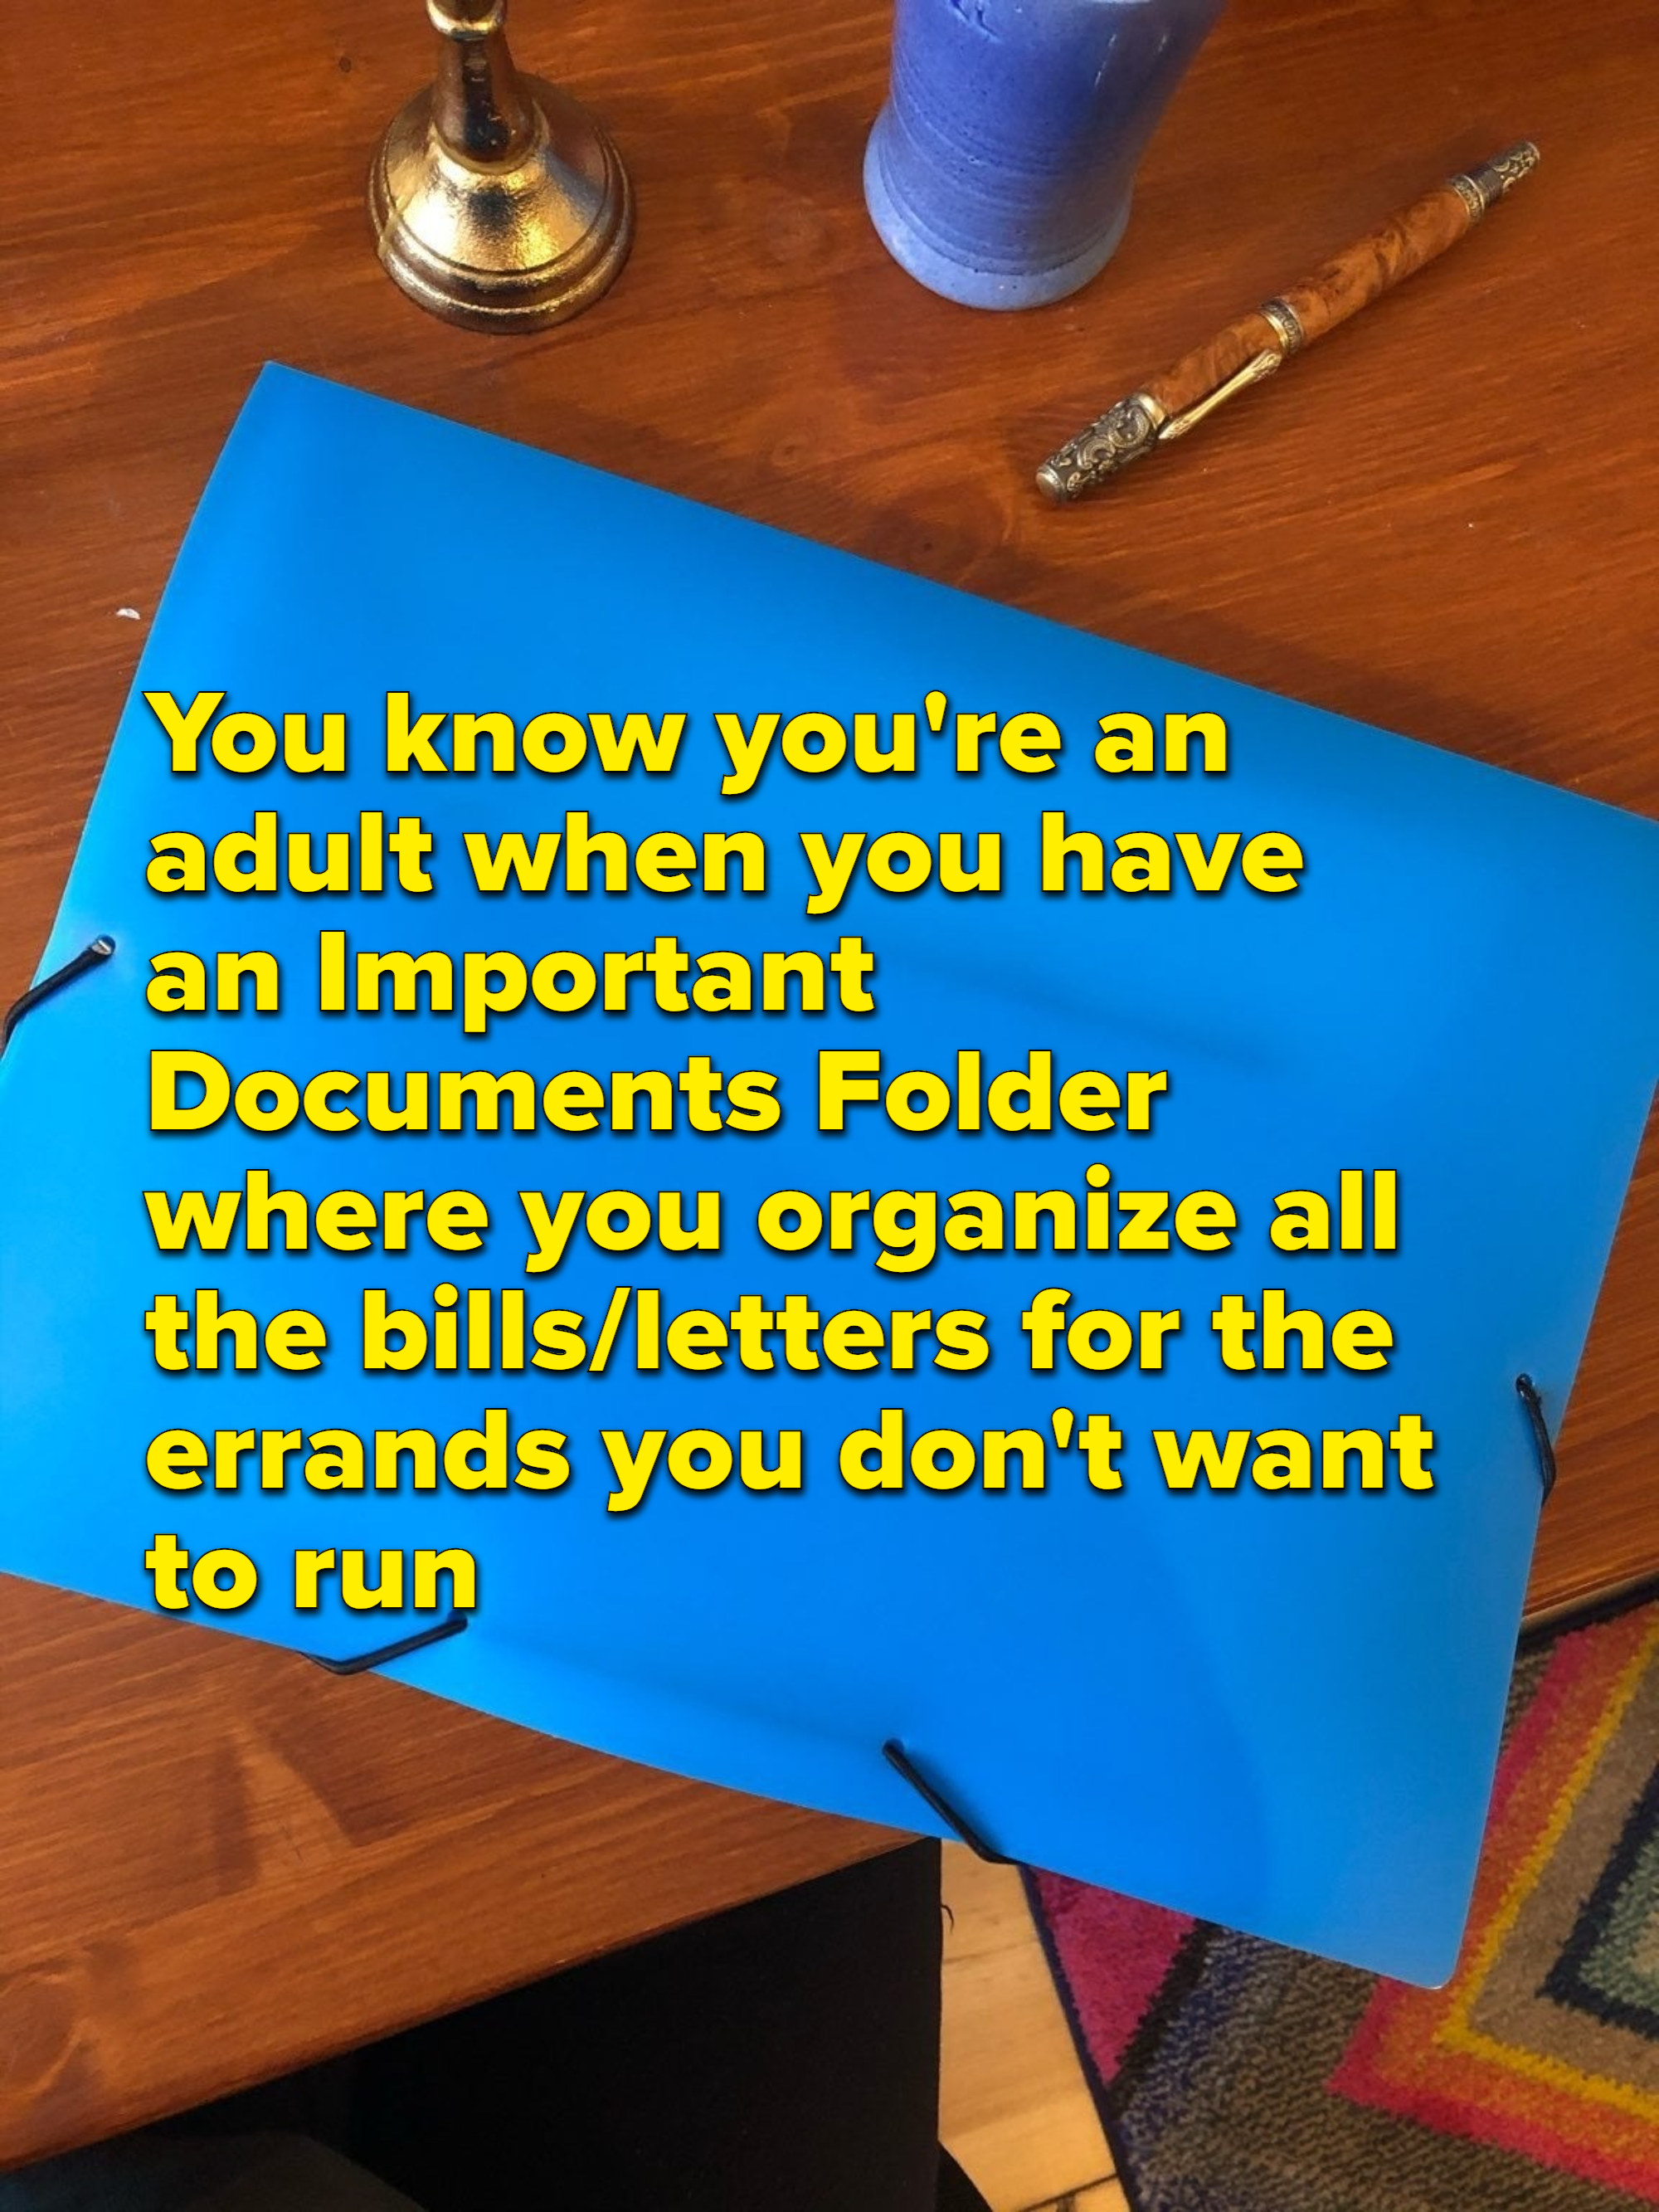 明亮的蓝色文件夹一个木制的桌子上,覆盖文本阅读,“你知道你# x27;再保险成人当你有一个重要文件文件夹组织所有的账单和信件的差事不要x27; t想run"